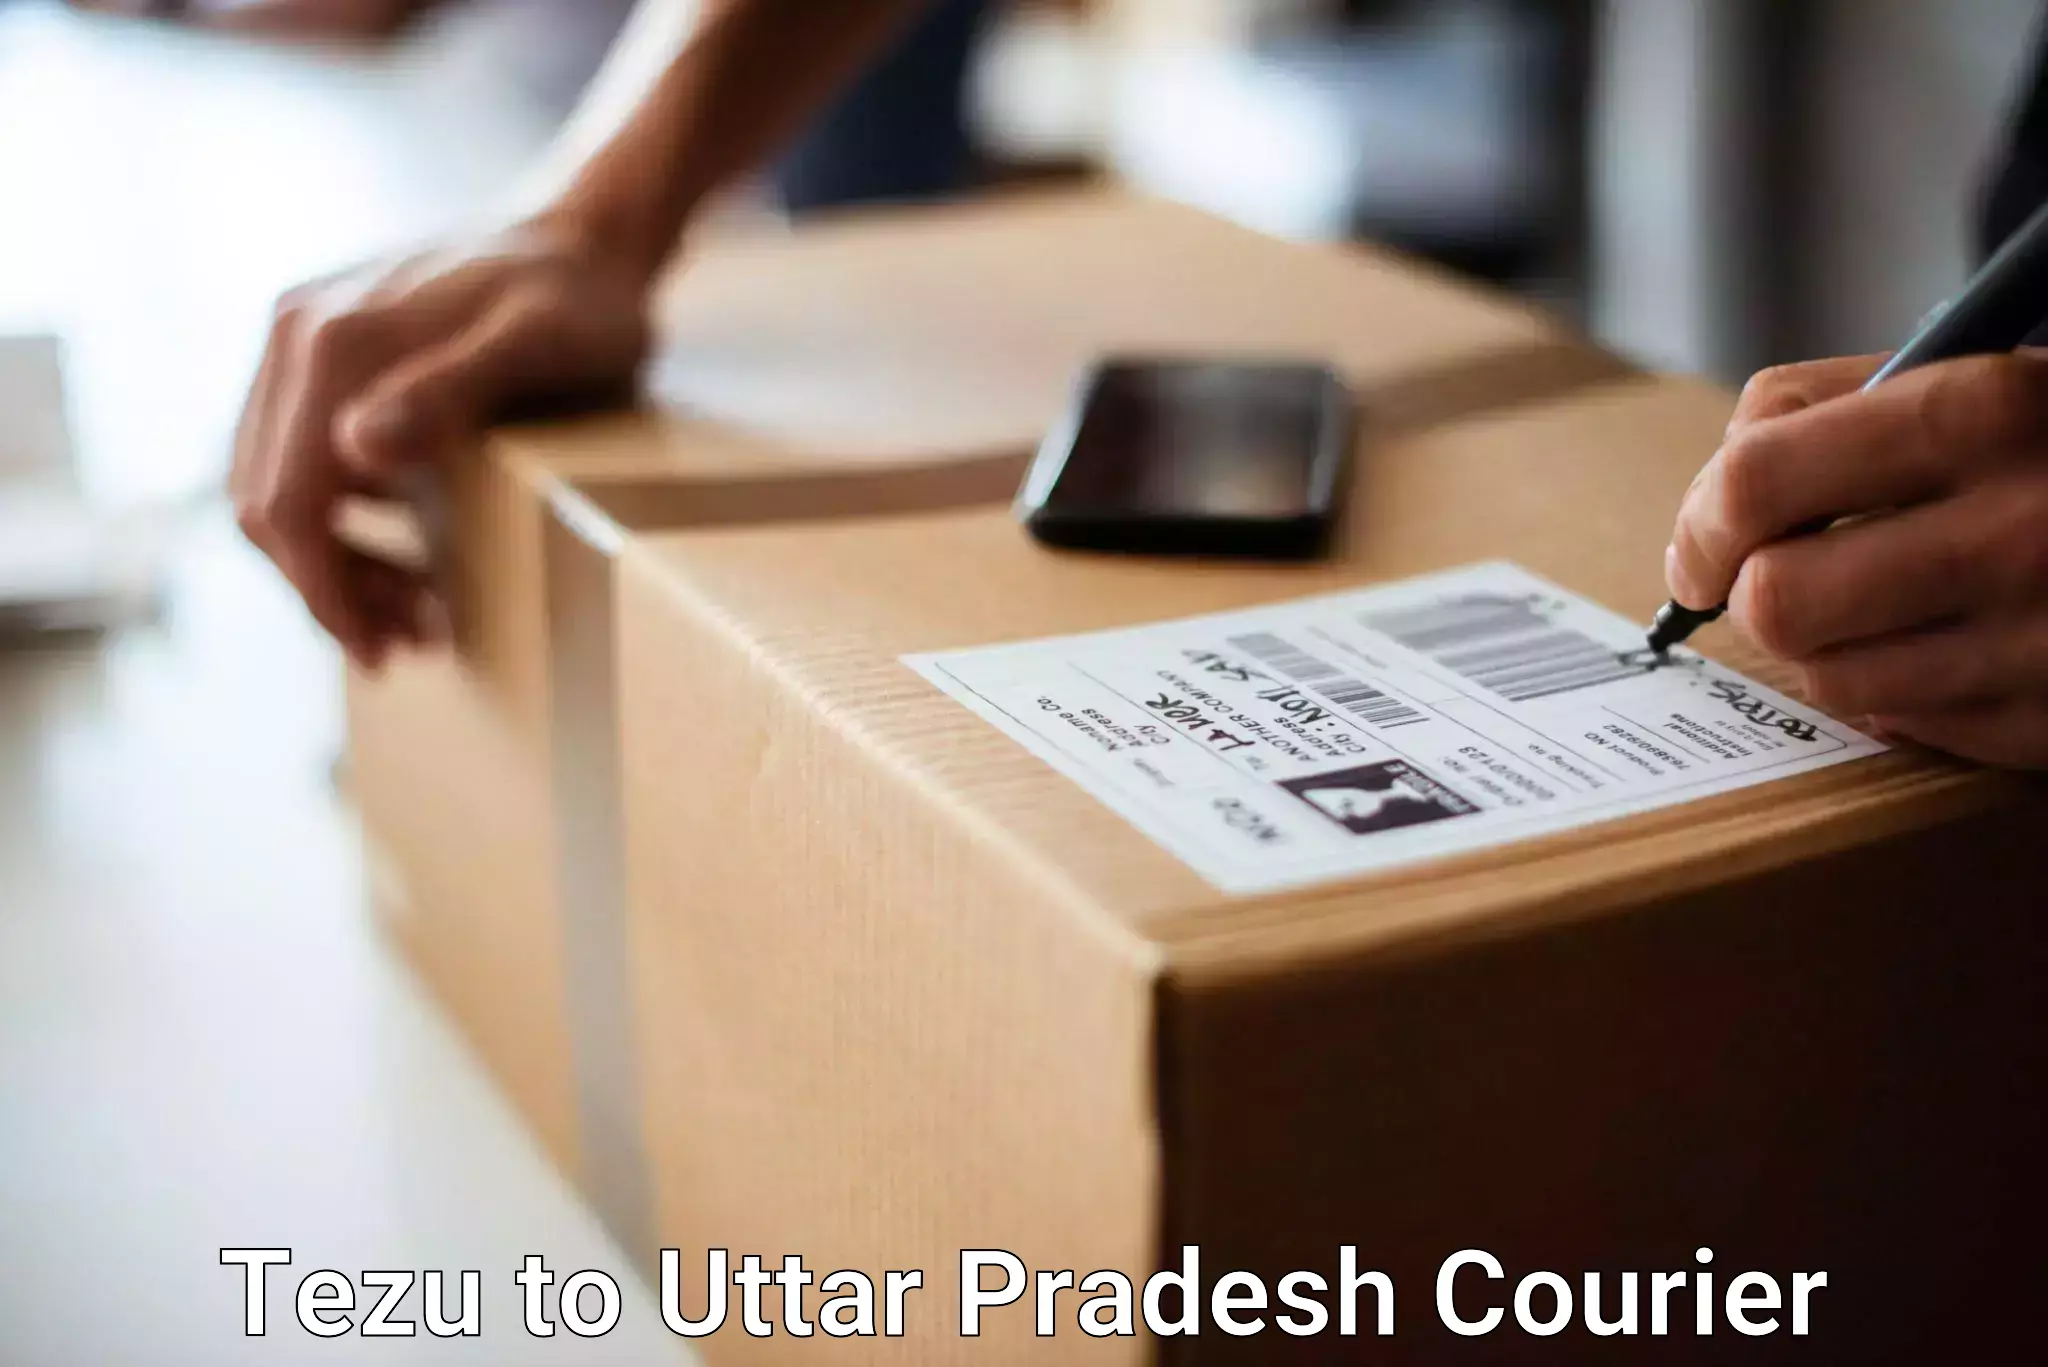 Luggage shipment specialists Tezu to Ayodhya